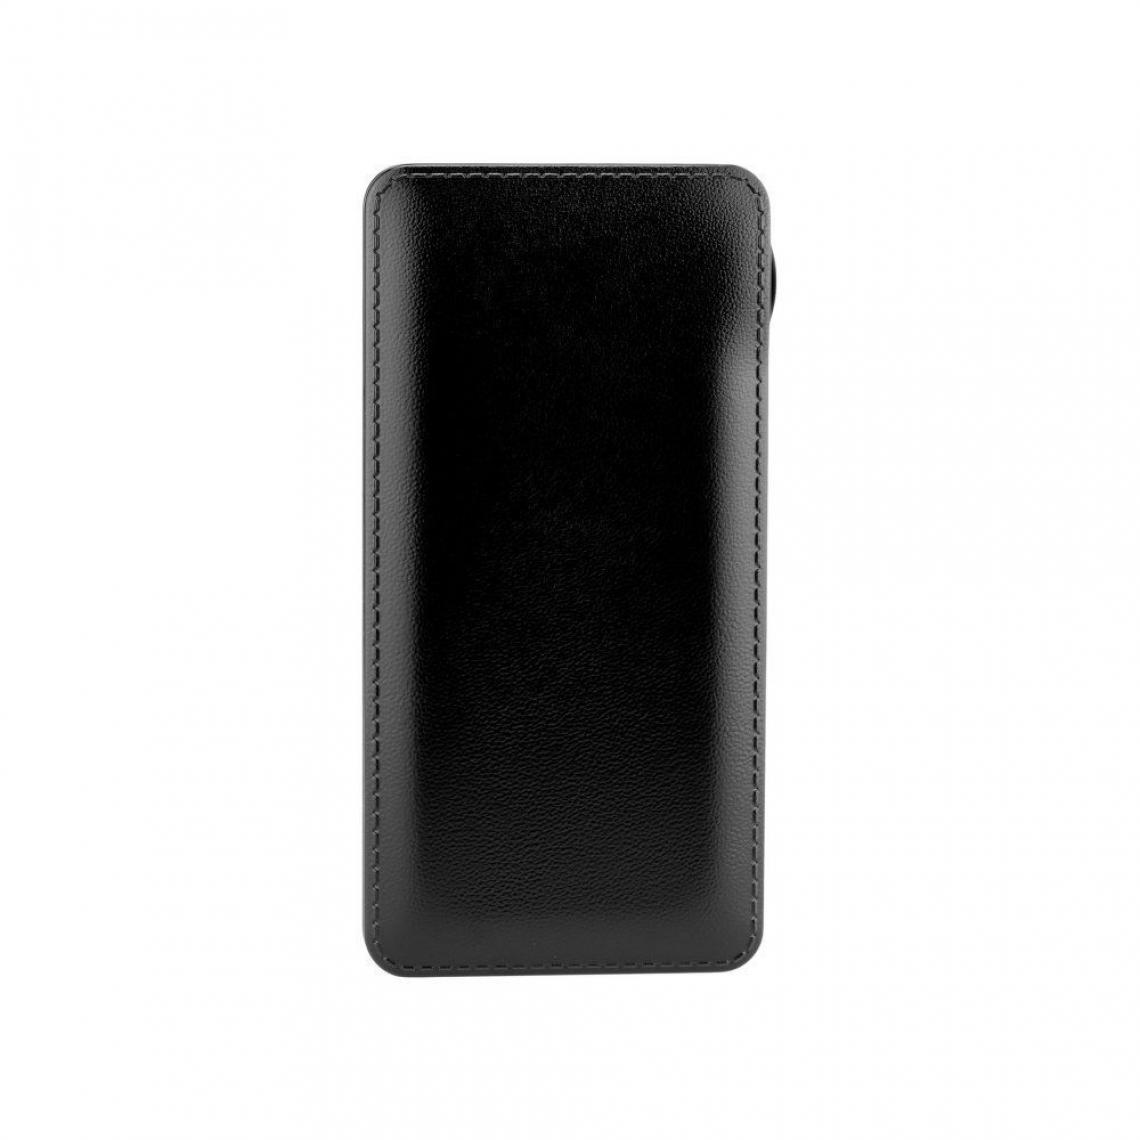 Ozzzo - Chargeur batterie externe 30000 mAh powerbank ozzzo noir pour SAMSUNG G950 Galaxy S8 - Autres accessoires smartphone